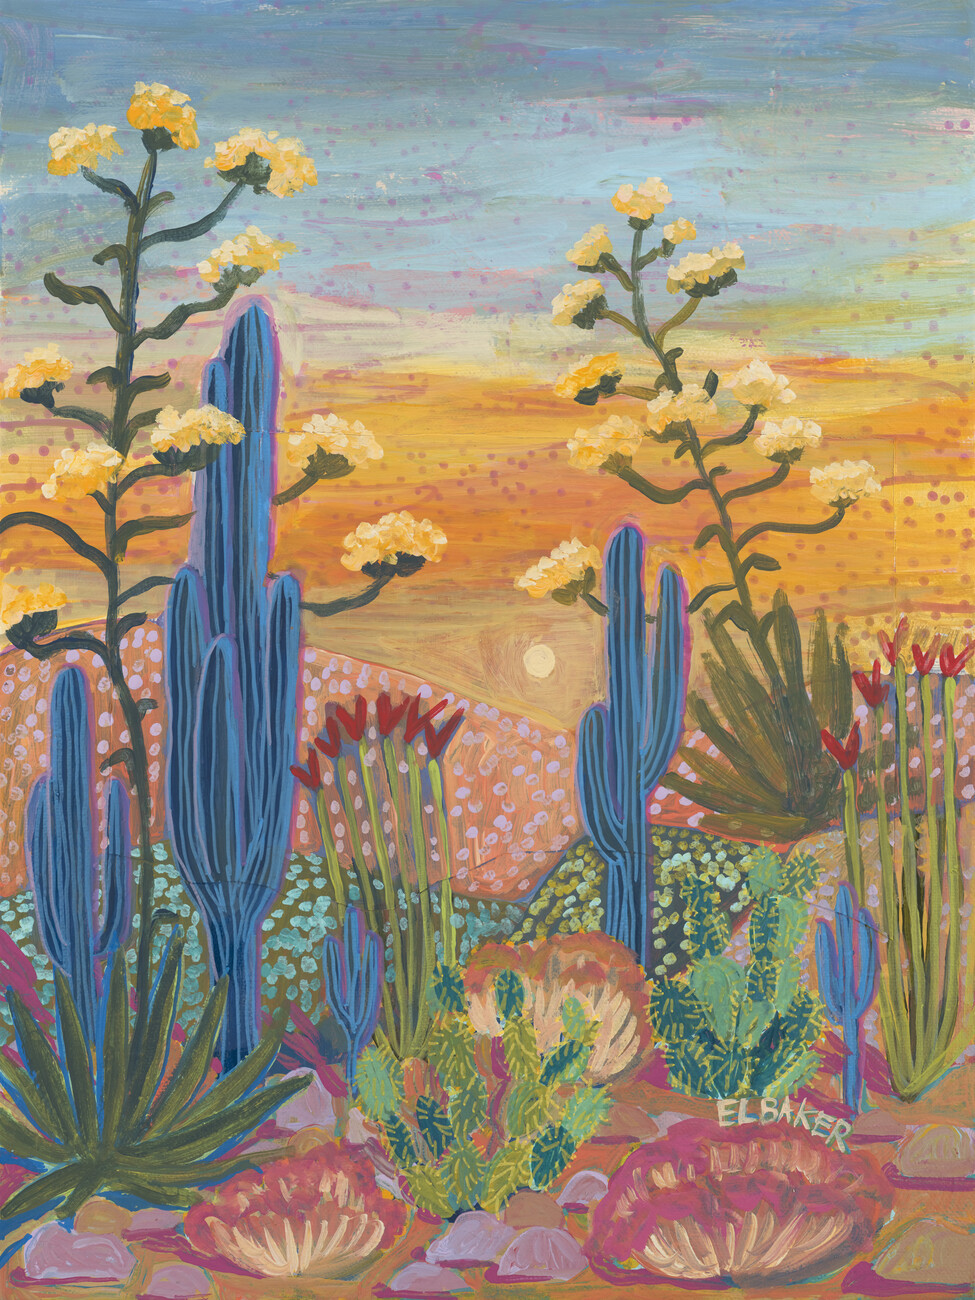 Eleanor Baker Ilustrace Colorful desert, Eleanor Baker, (30 x 40 cm)